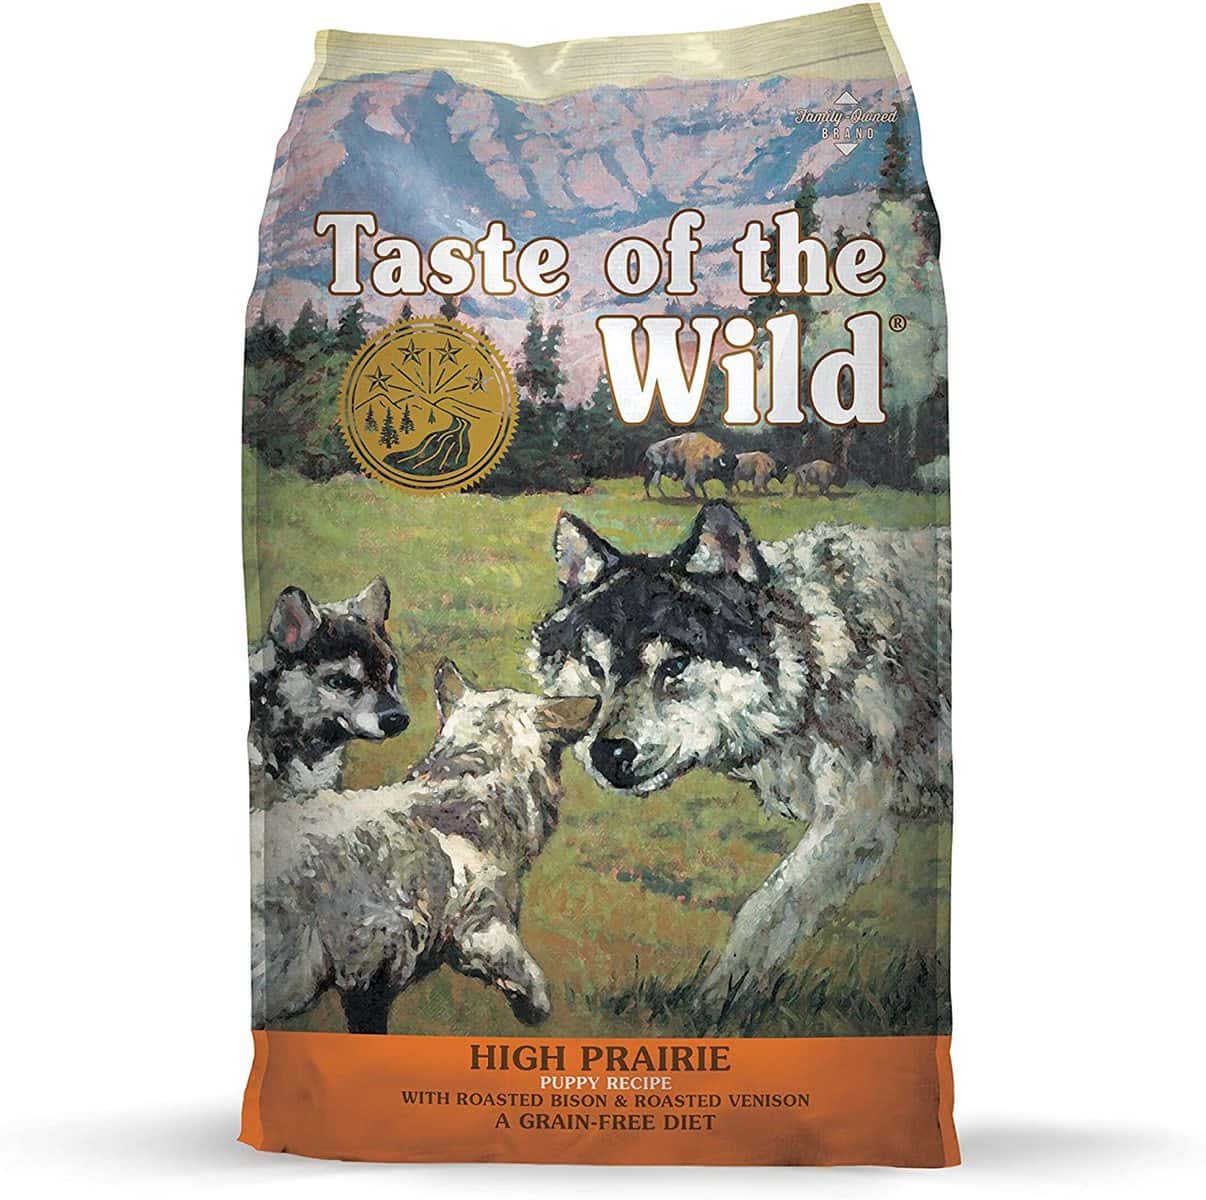 Taste of the Wild Grain-Free Puppy Food